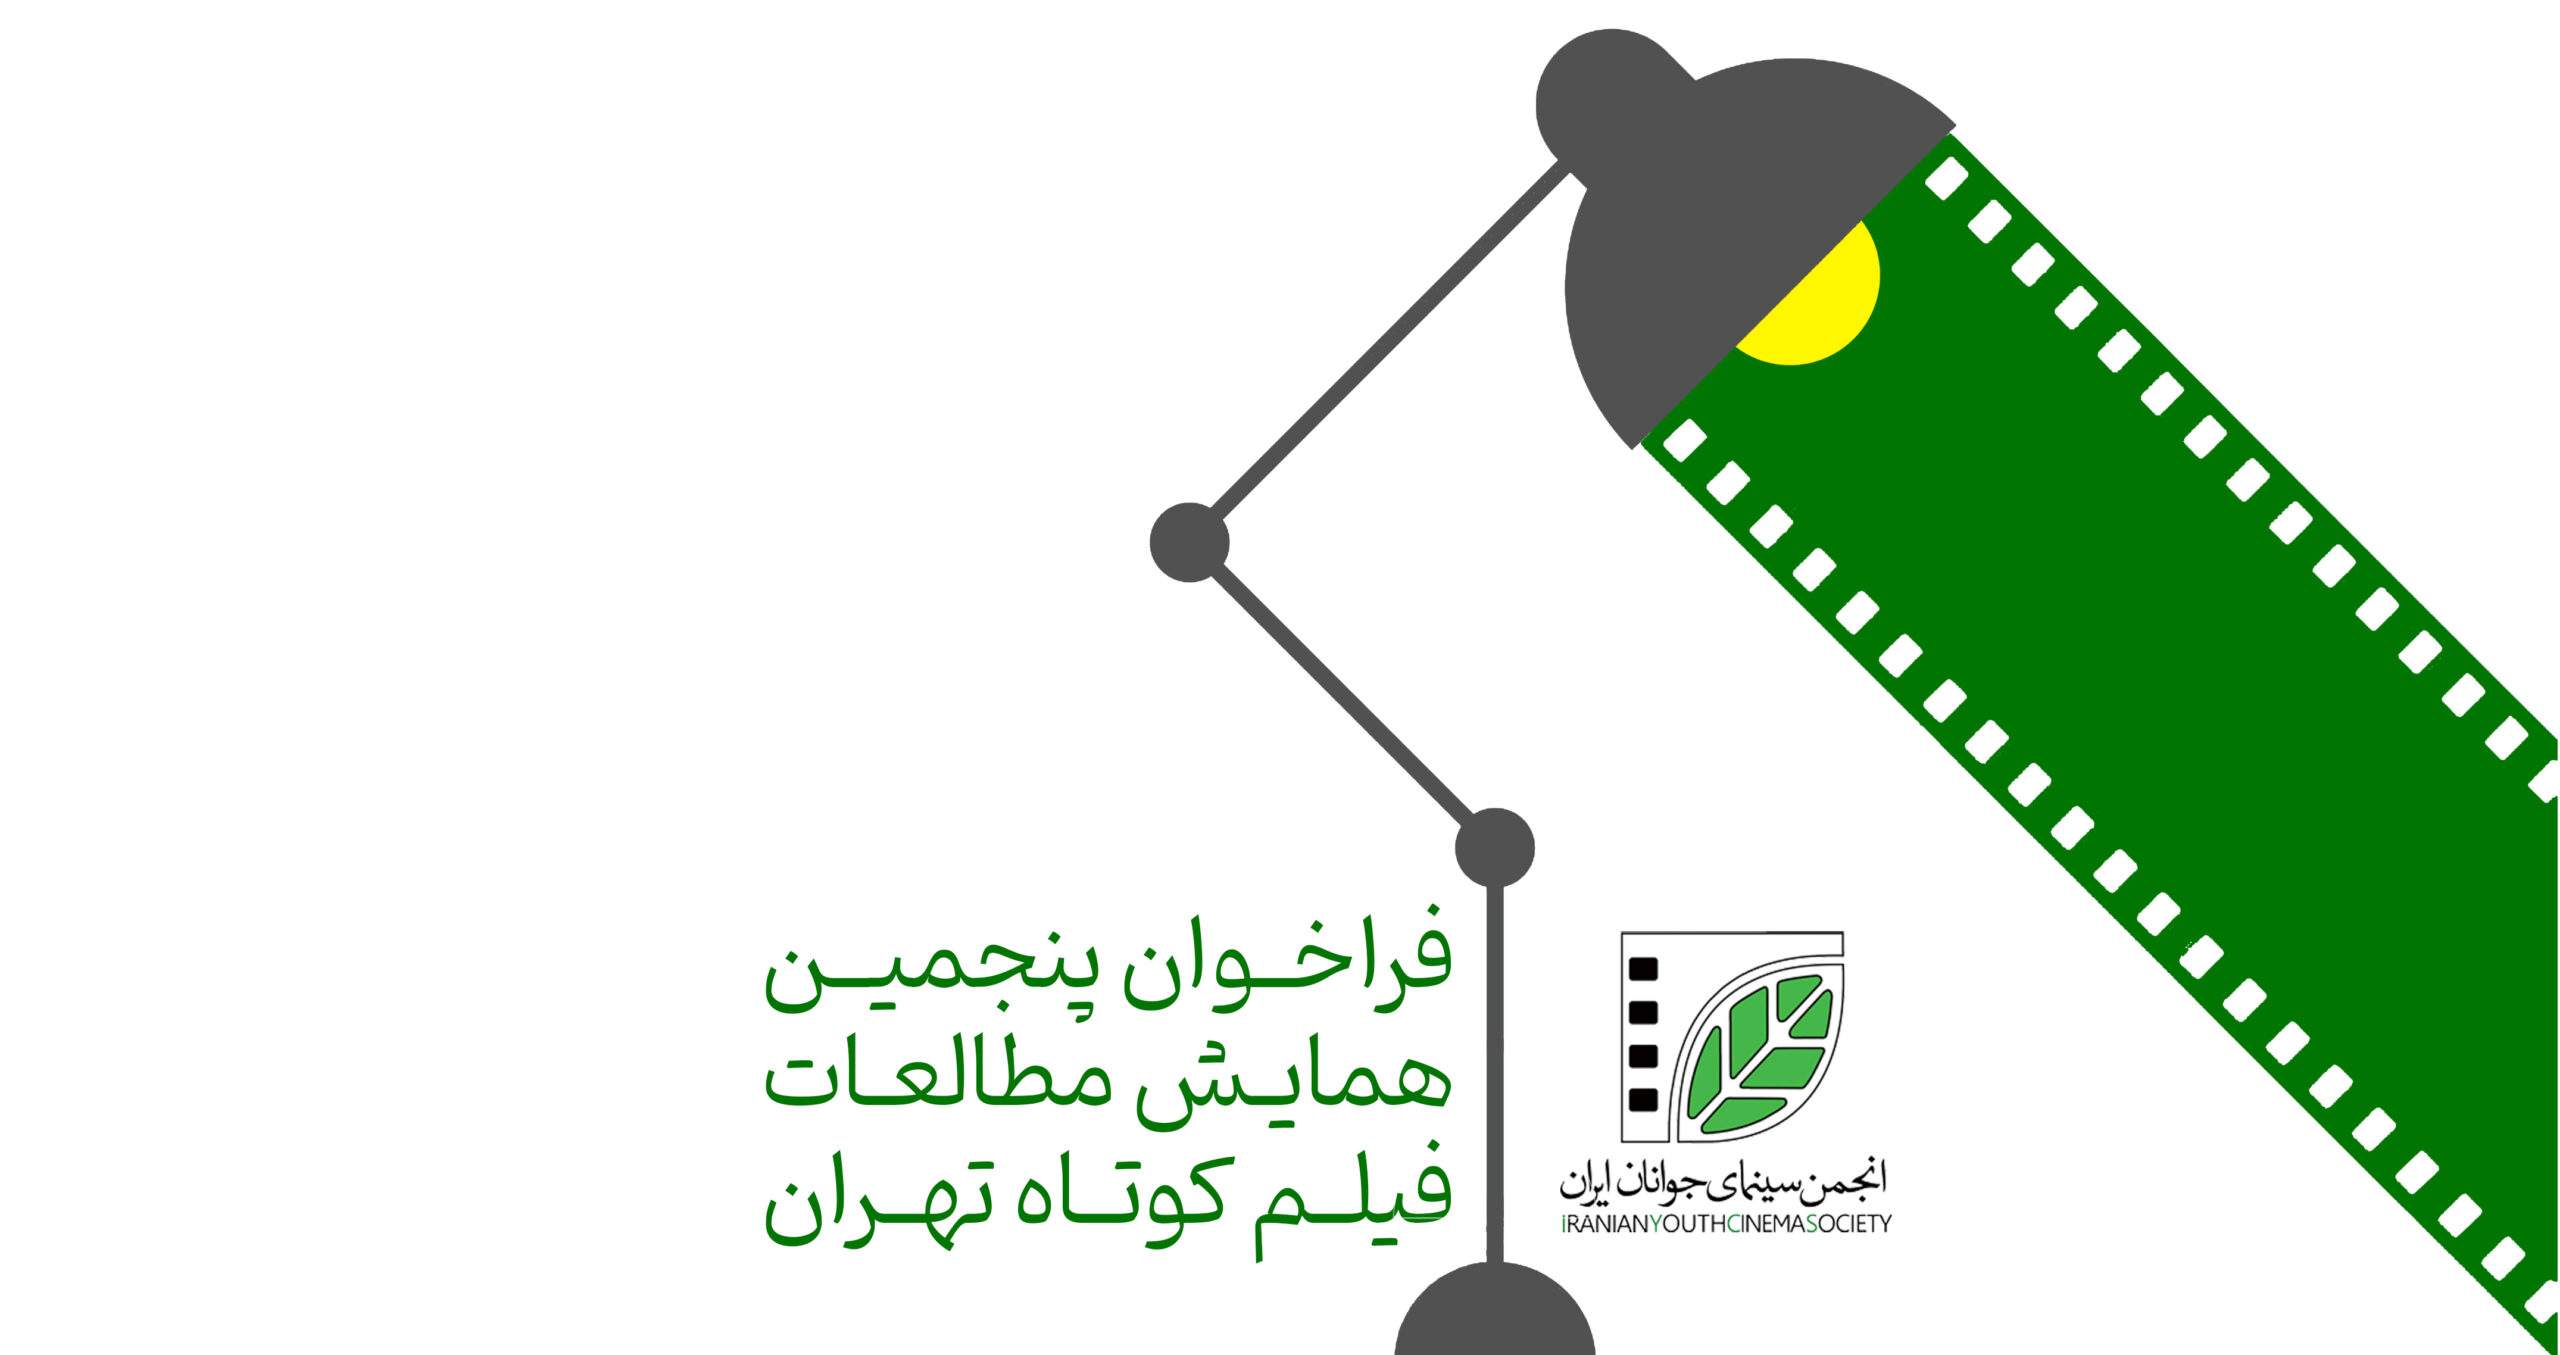 فراخوان پنجمین همایش مطالعات فیلم کوتاه تهران منتشر شد